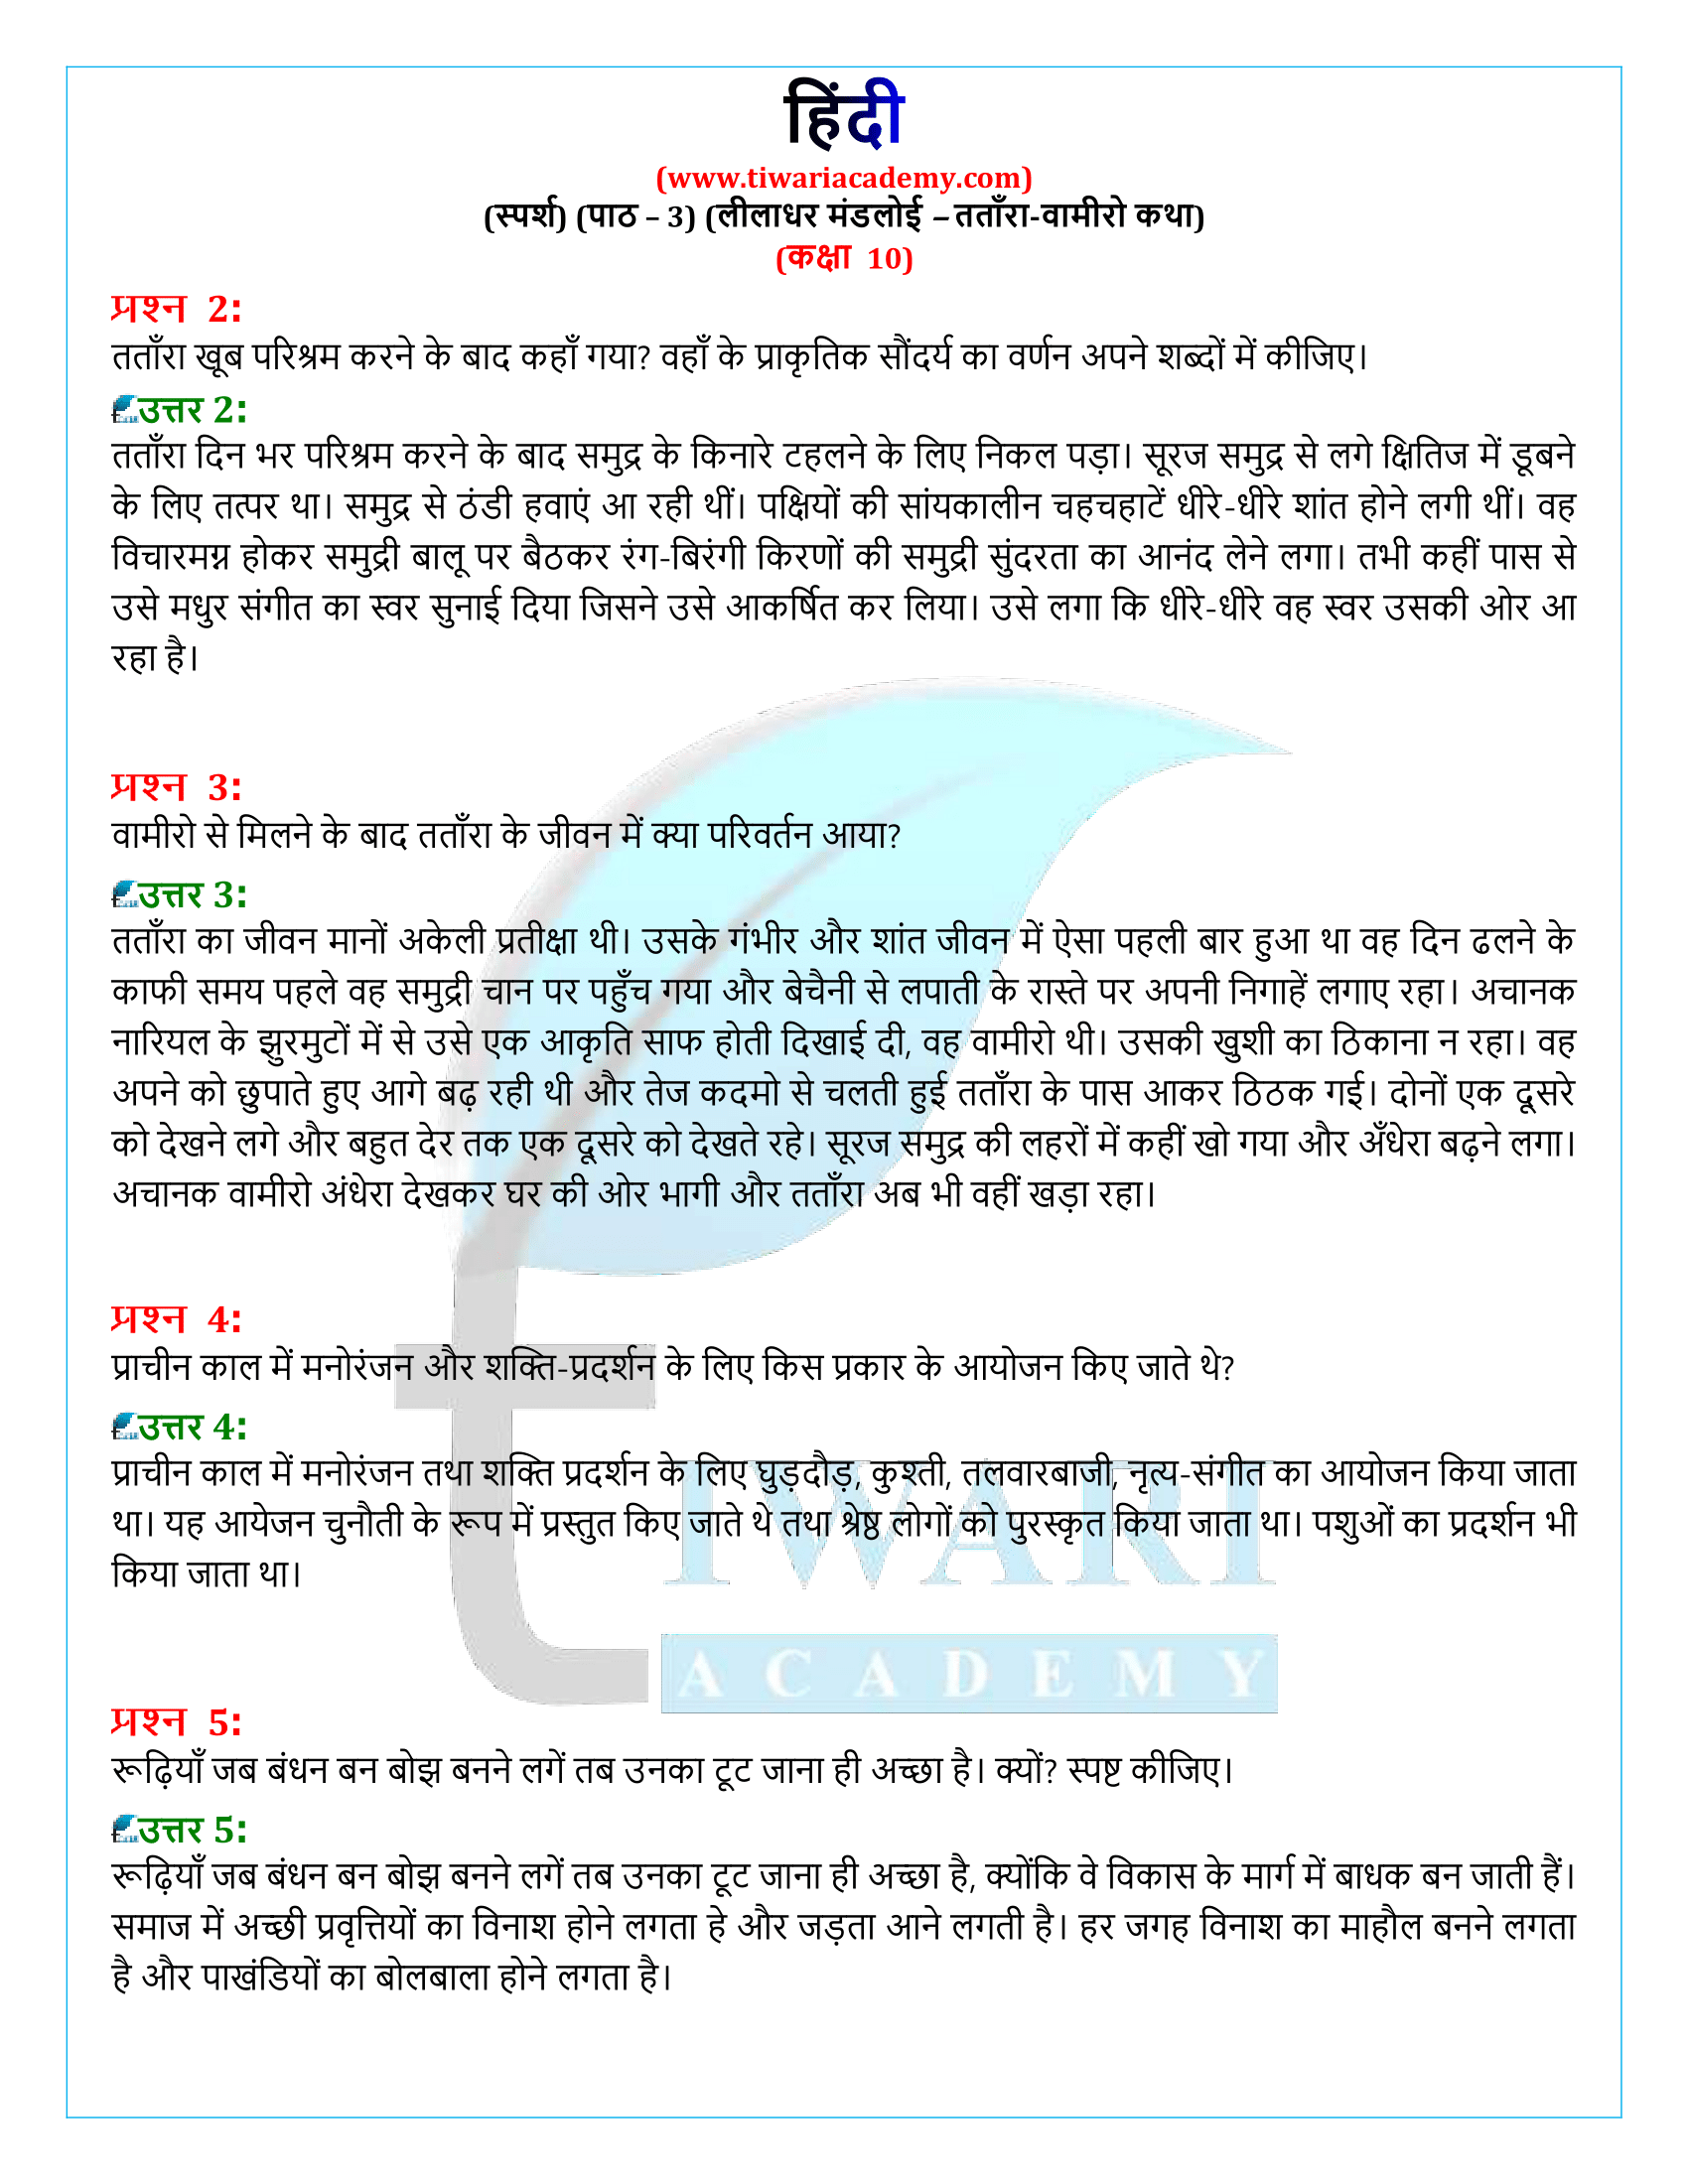 कक्षा 10 हिंदी स्पर्श अध्याय 3 गद्य